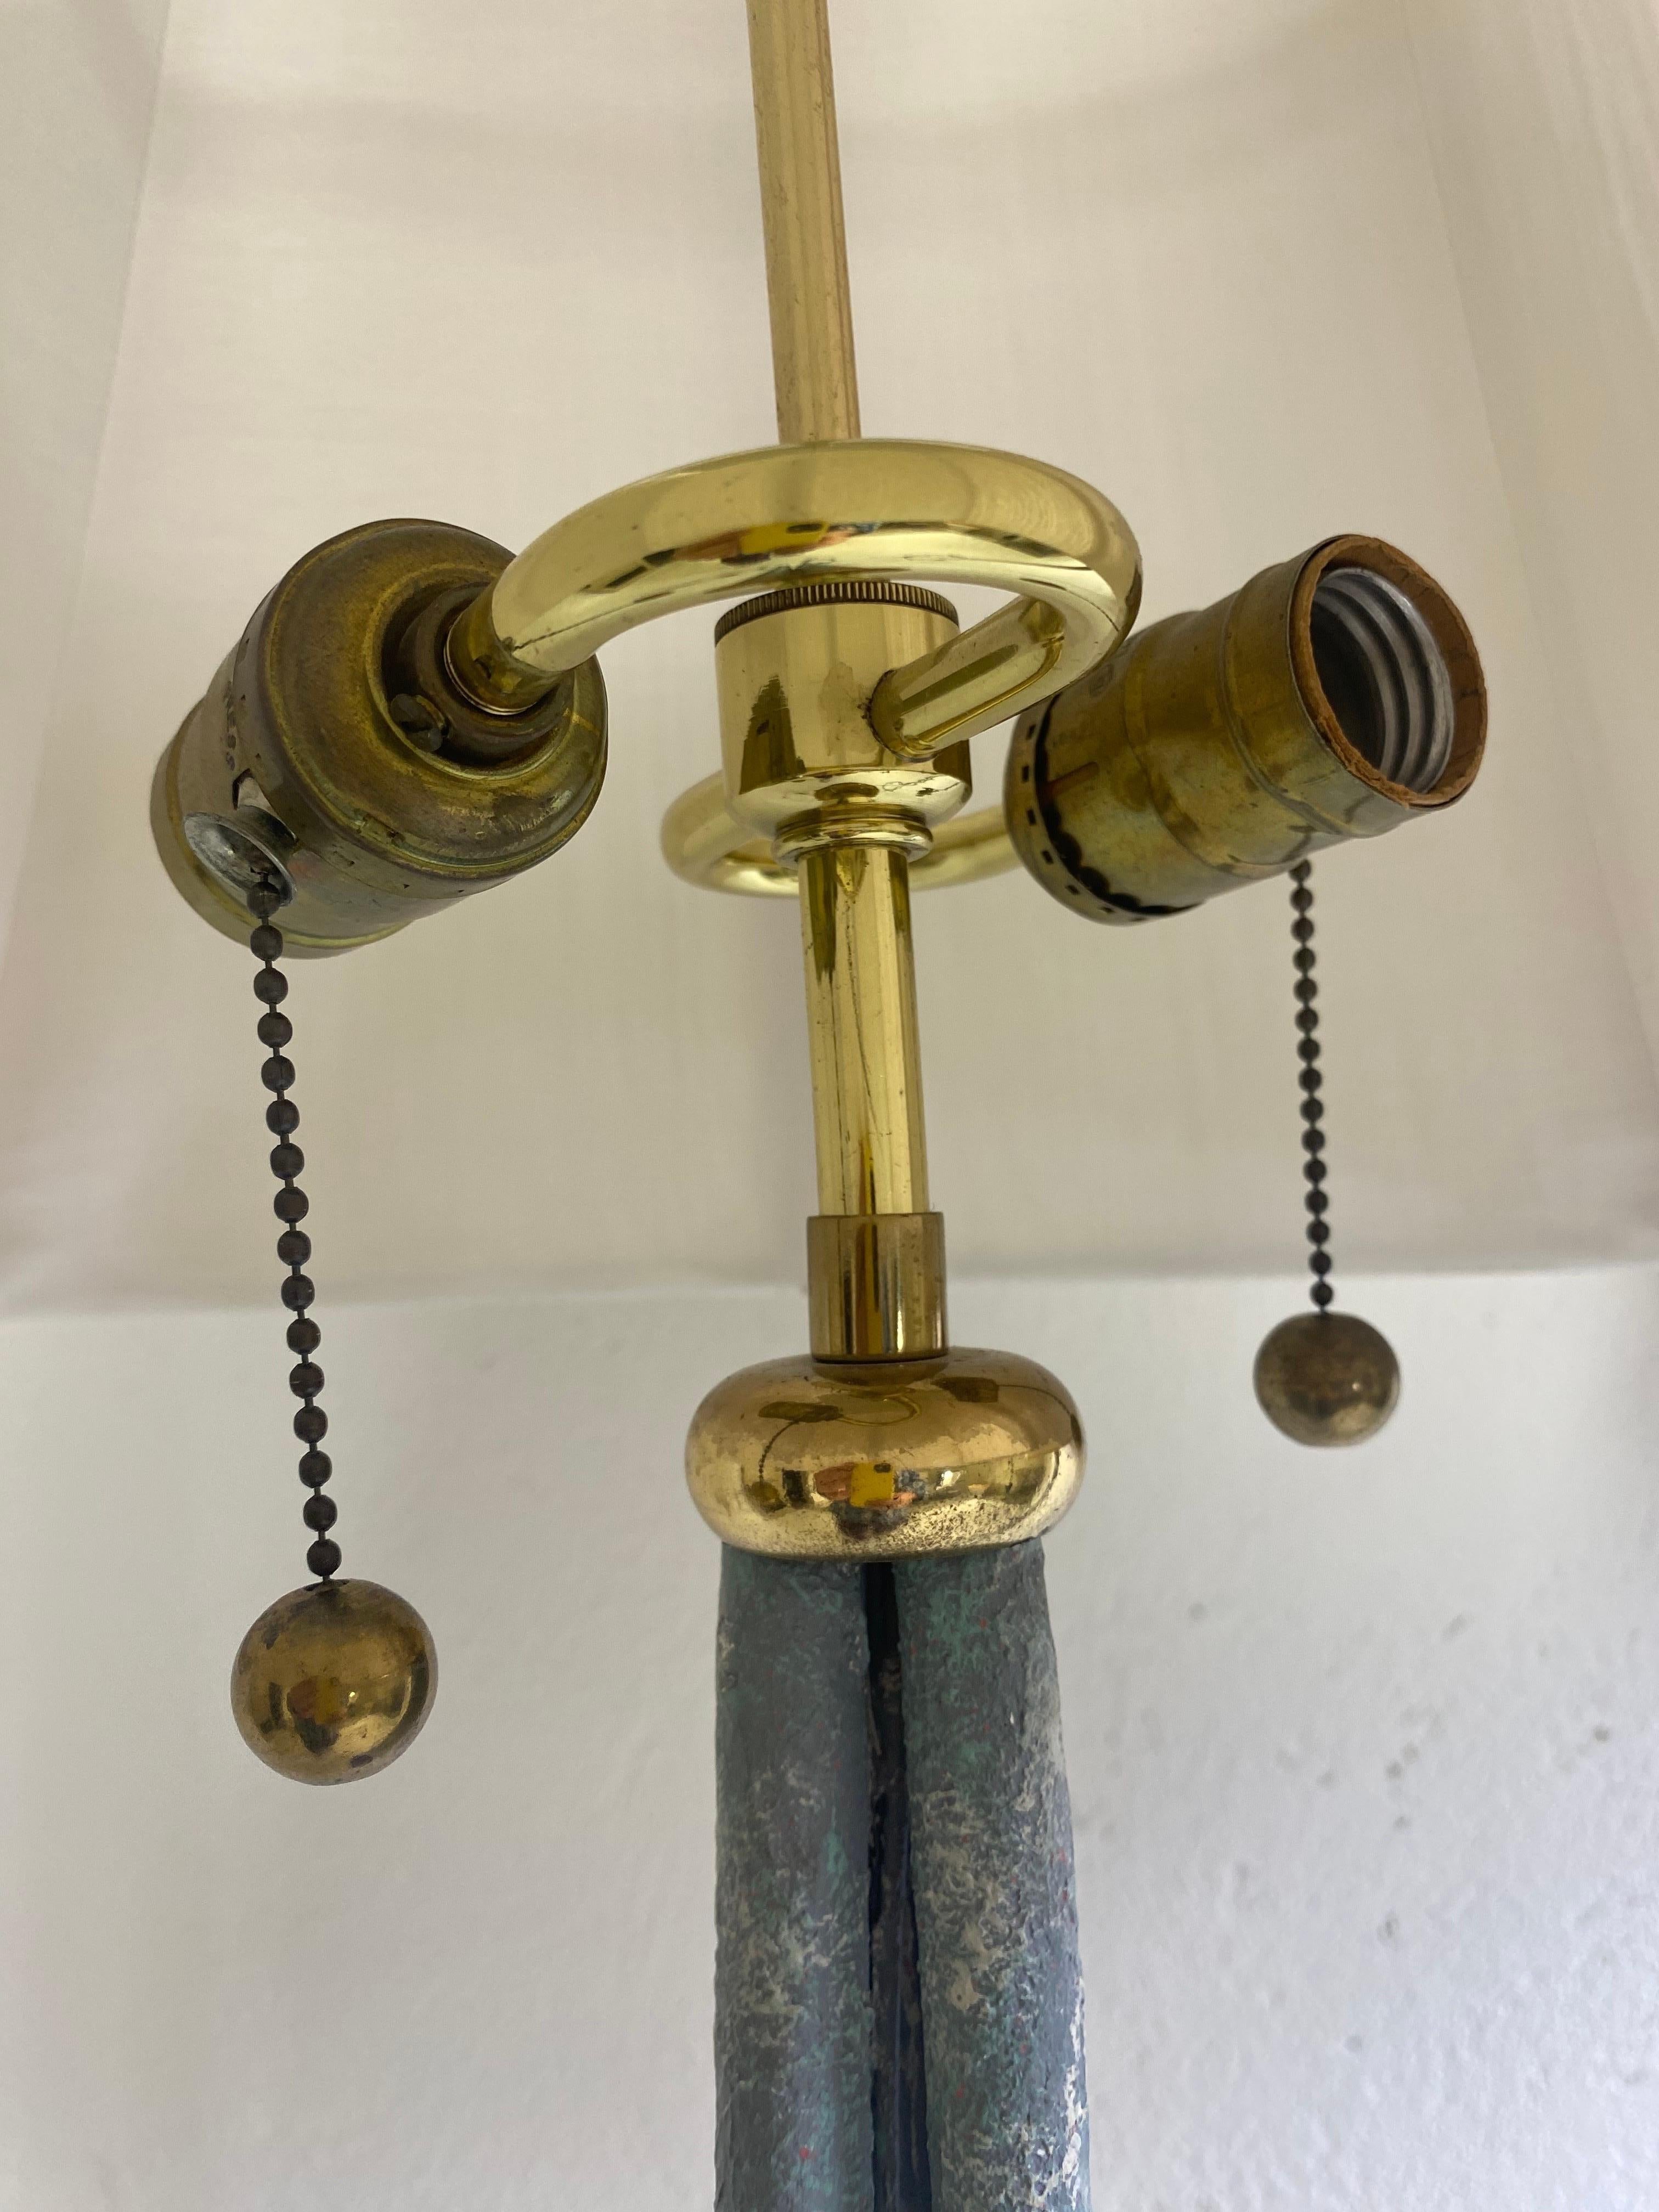 Il s'agit d'une paire de lampadaires en fer forgé vintage du 20ème siècle. Cette paire de lampadaires est surmontée de douilles et d'accessoires en laiton massif S cluster montés au sommet. Les bases en fer ont une finition oxydée vieillie à la